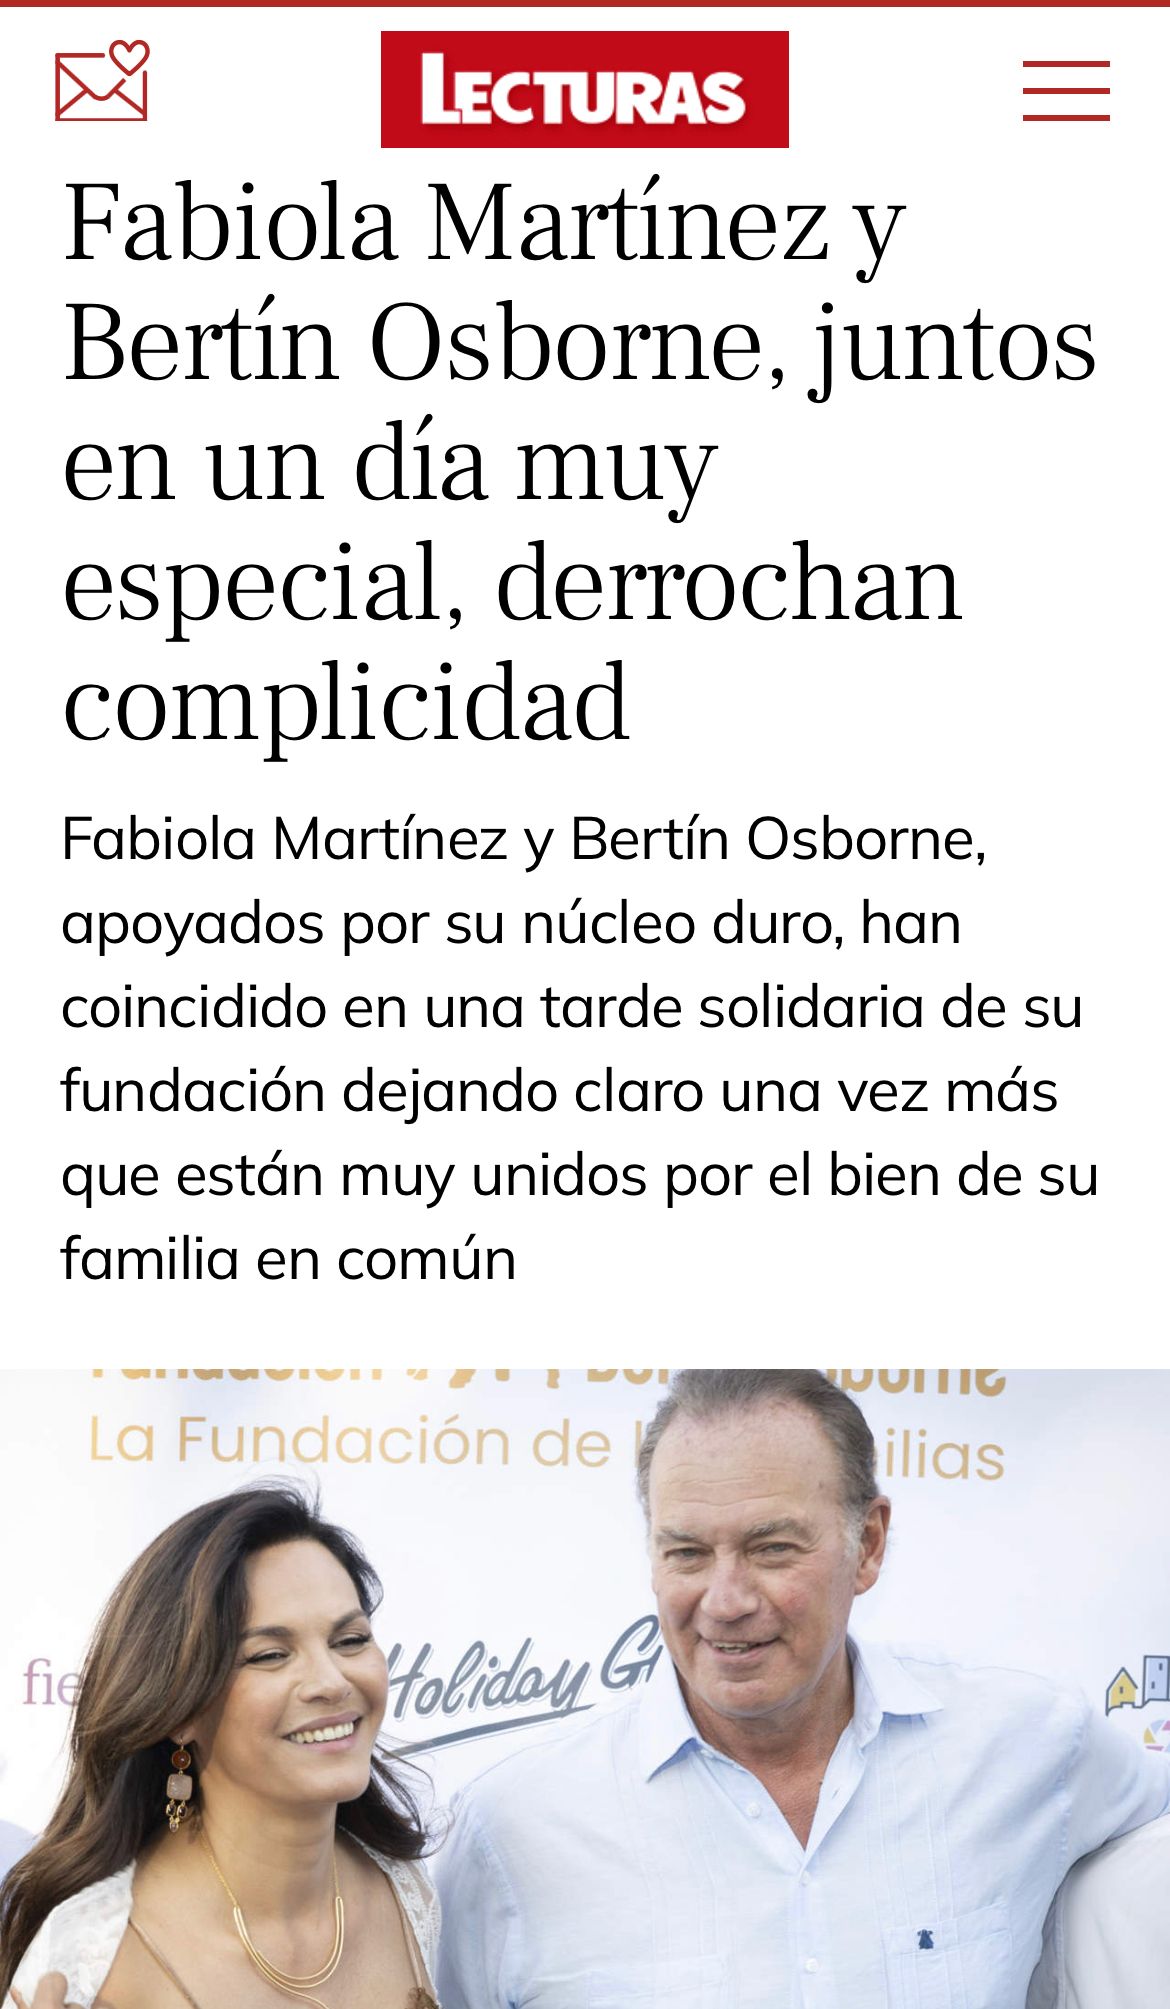 Fabiola Martínez y Bertín Osborne, juntos en un día muy especial, derrochan complicidad